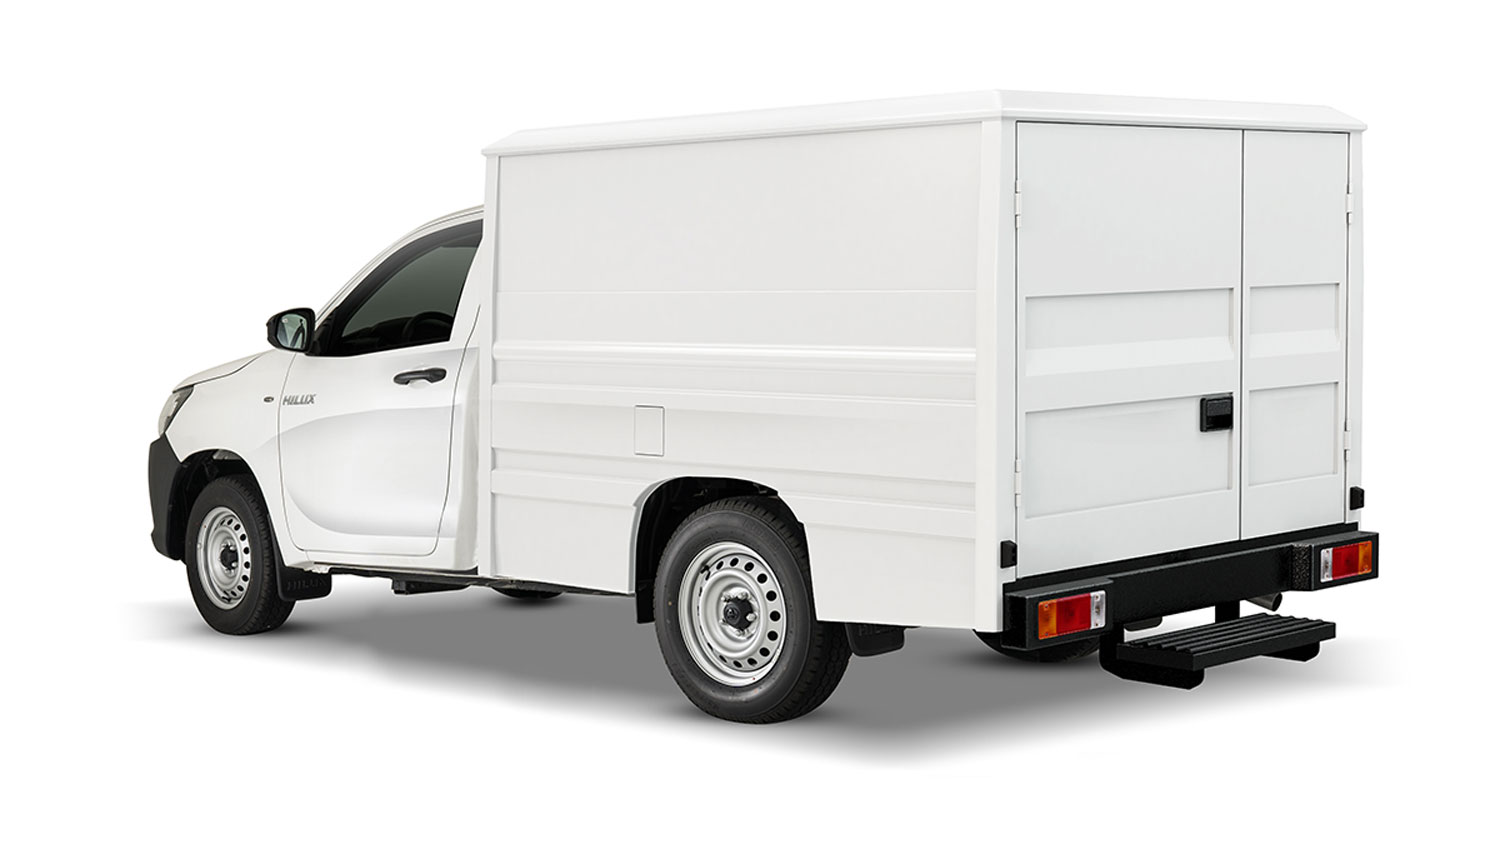 2020 Toyota Hilux Cargo: Specs, Price 